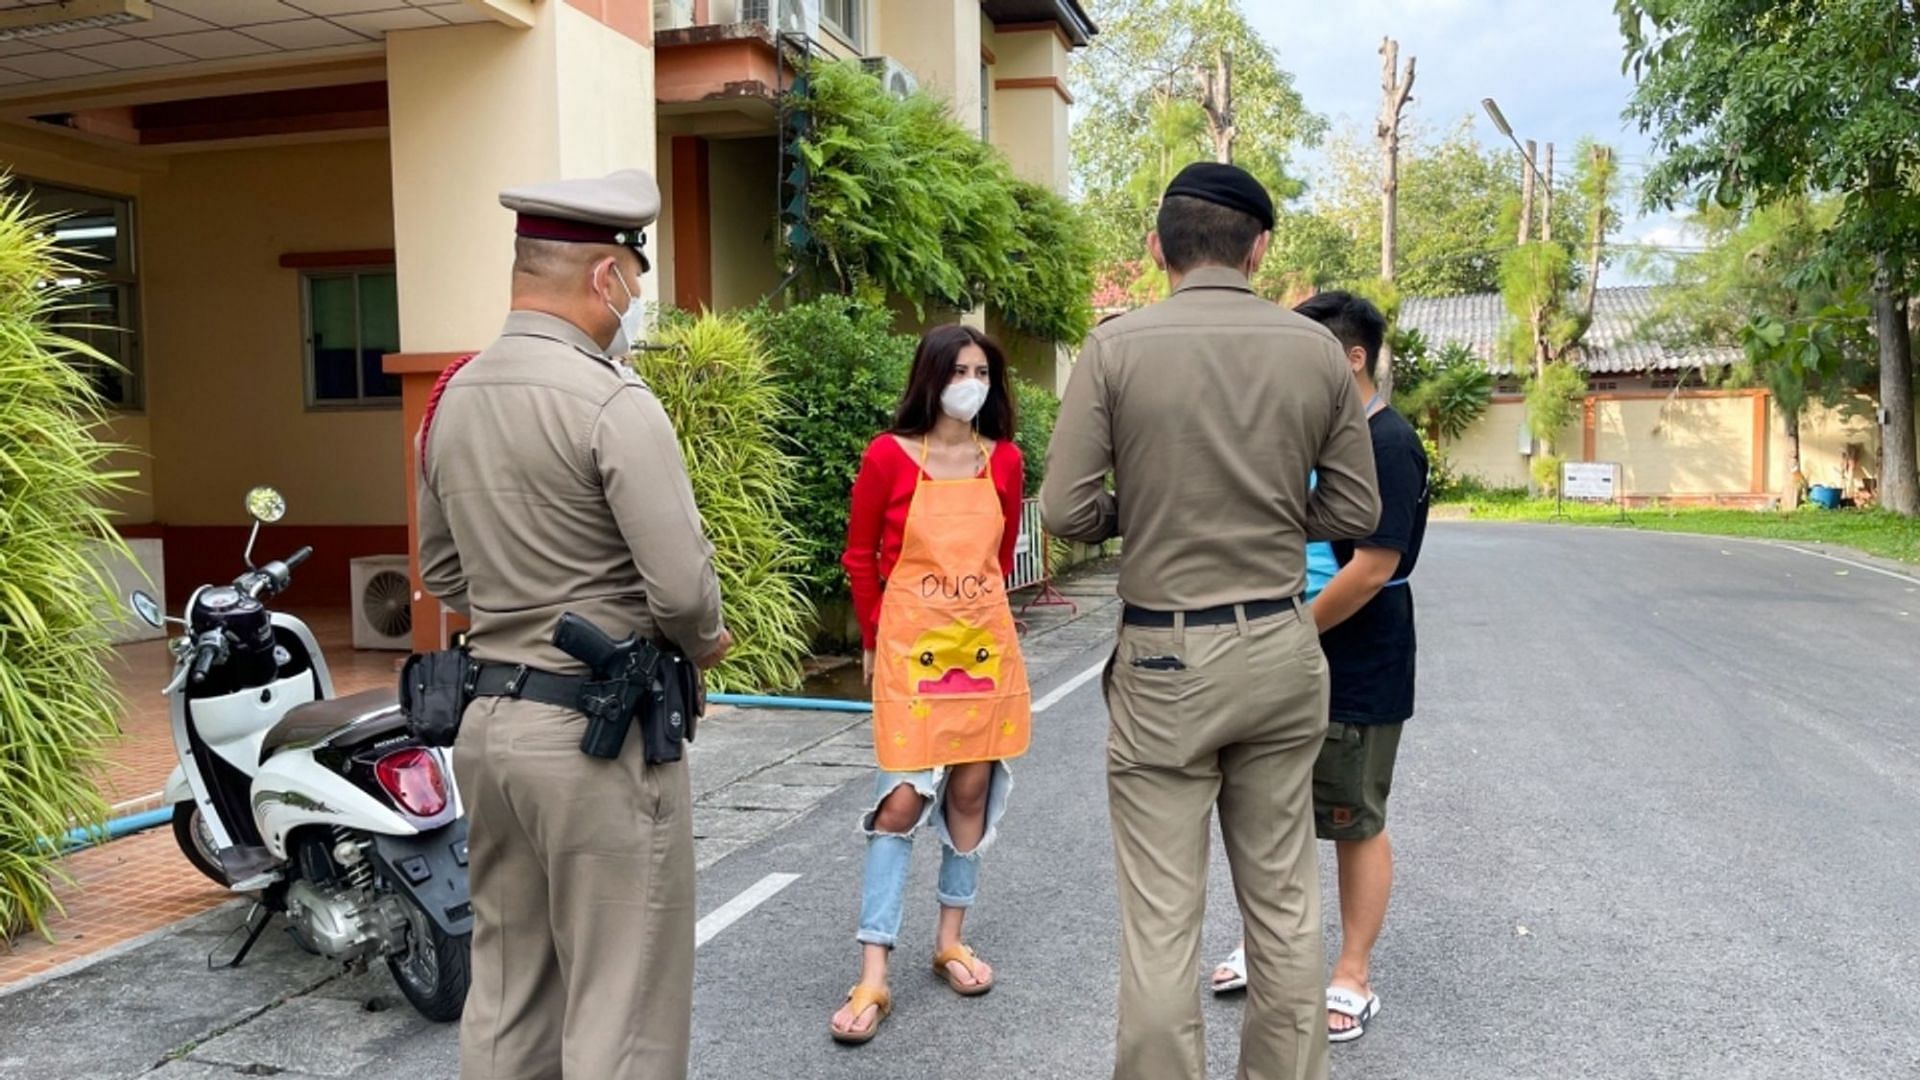 Thai pancake seller warned for public indecency (Image via Viral Press)